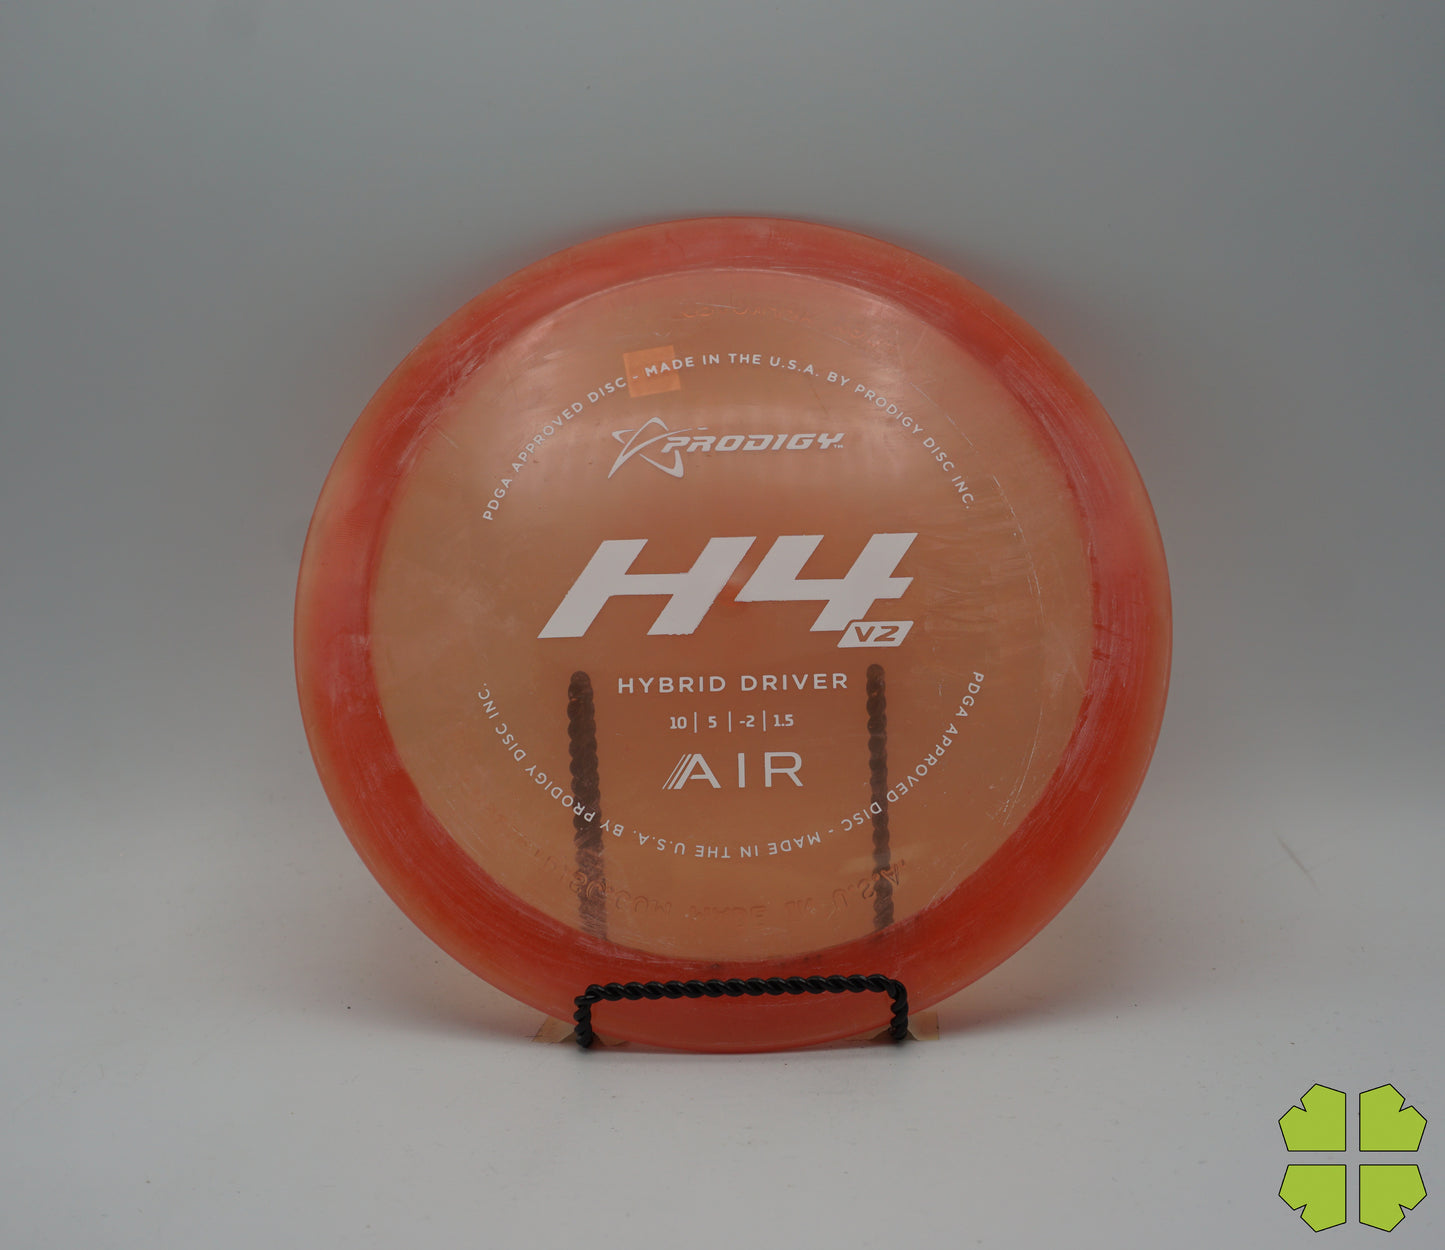 Air H4v2